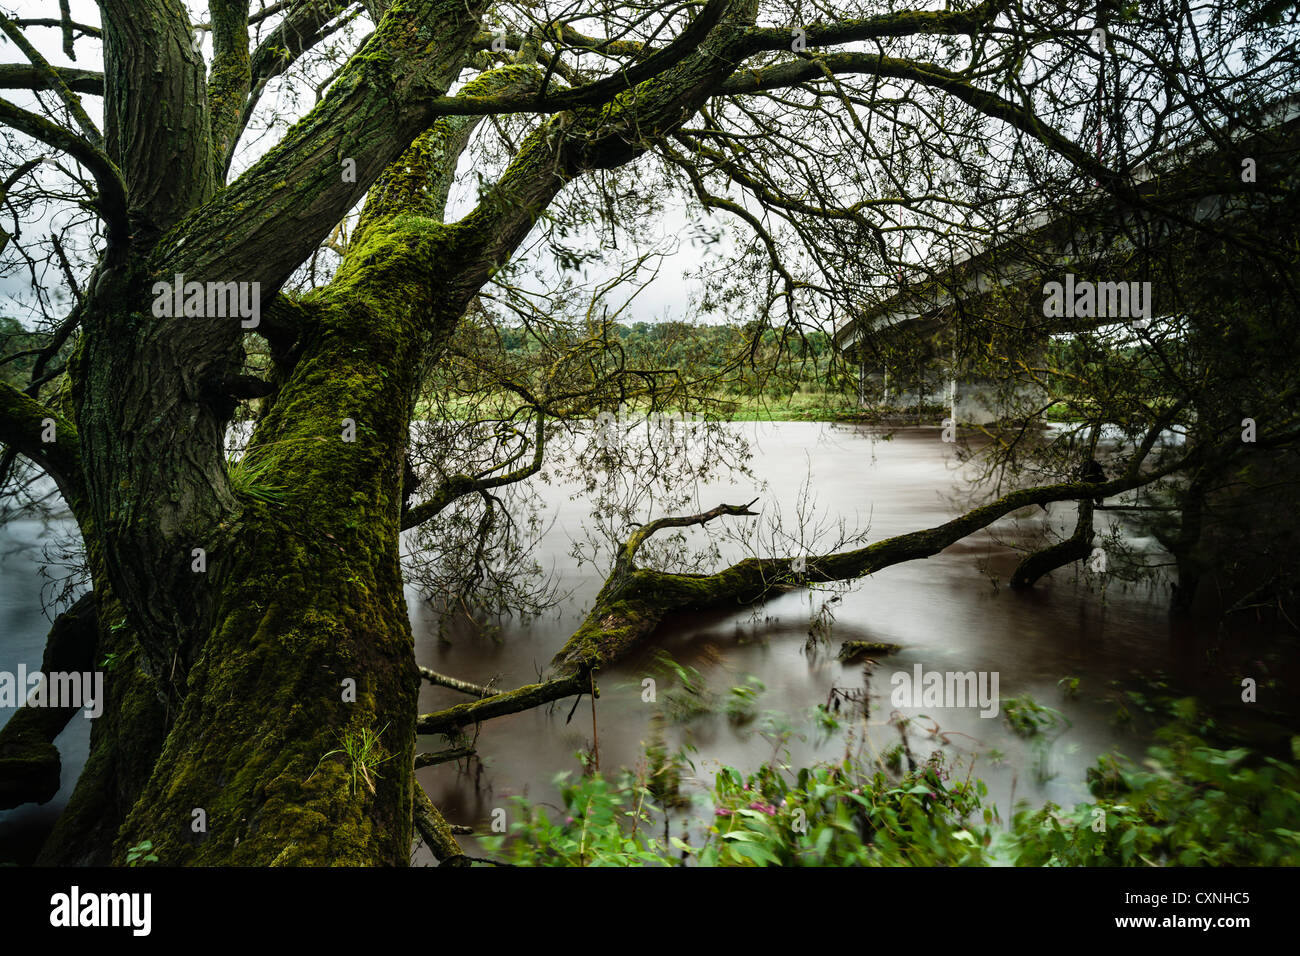 La rivière Tweed en crue avec de l'eau profonde après de fortes pluies, Kelso, l'Écosse. Banque D'Images